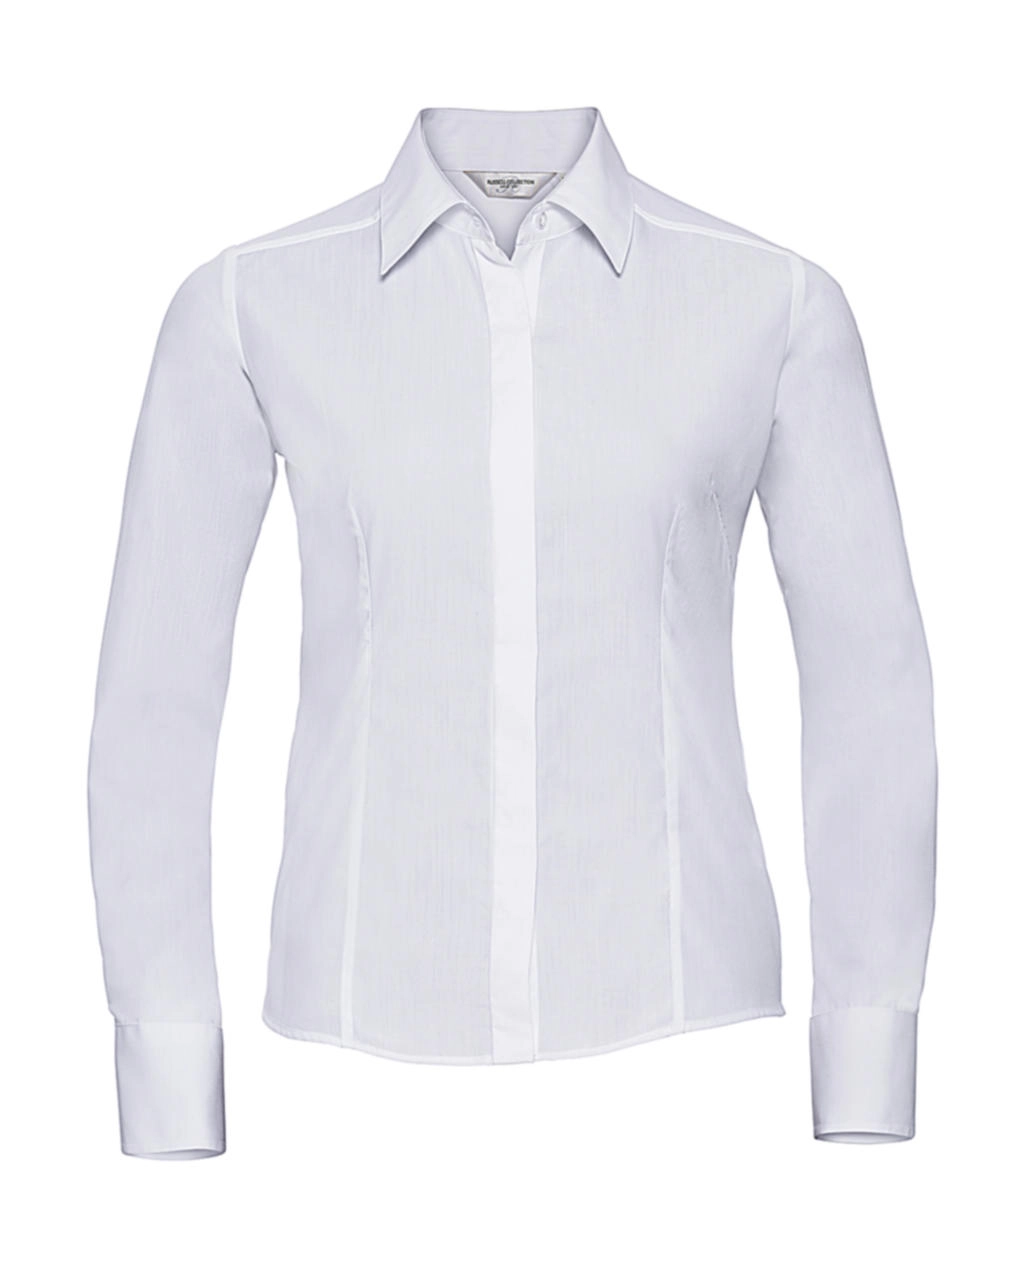 Ladies` LS Fitted Poplin Shirt zum Besticken und Bedrucken in der Farbe White mit Ihren Logo, Schriftzug oder Motiv.